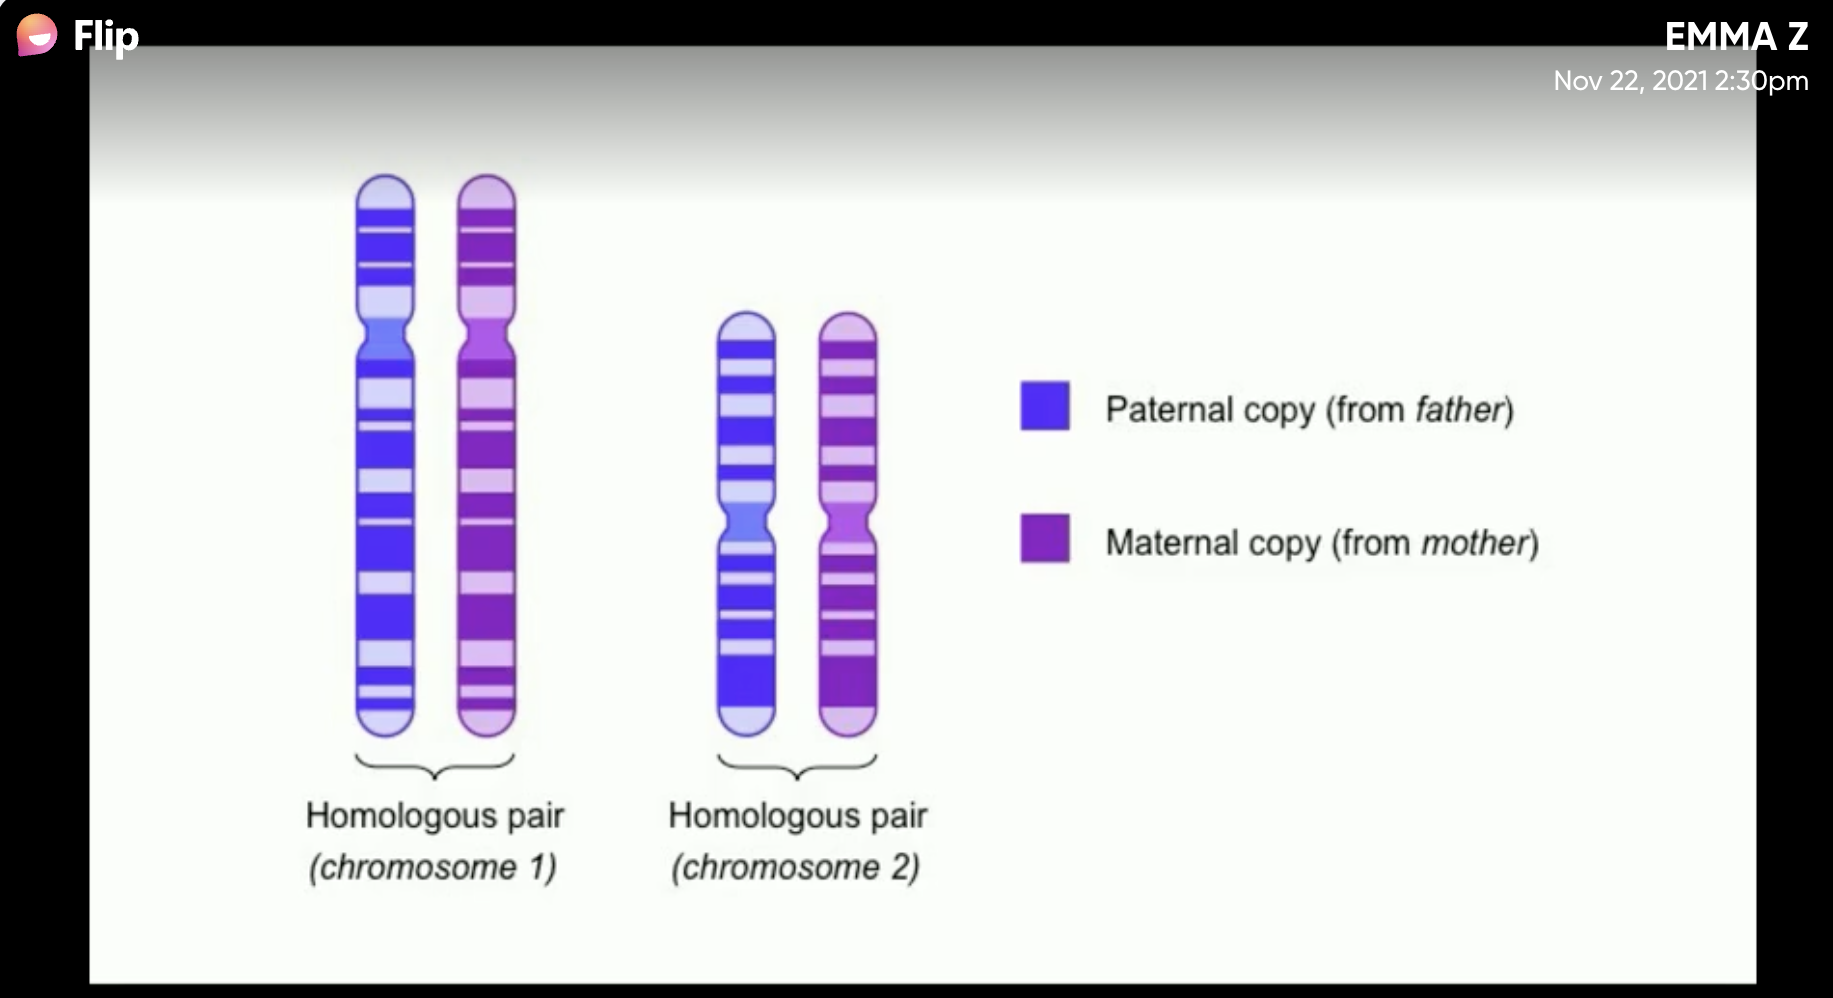 Местоположение гена в хромосоме